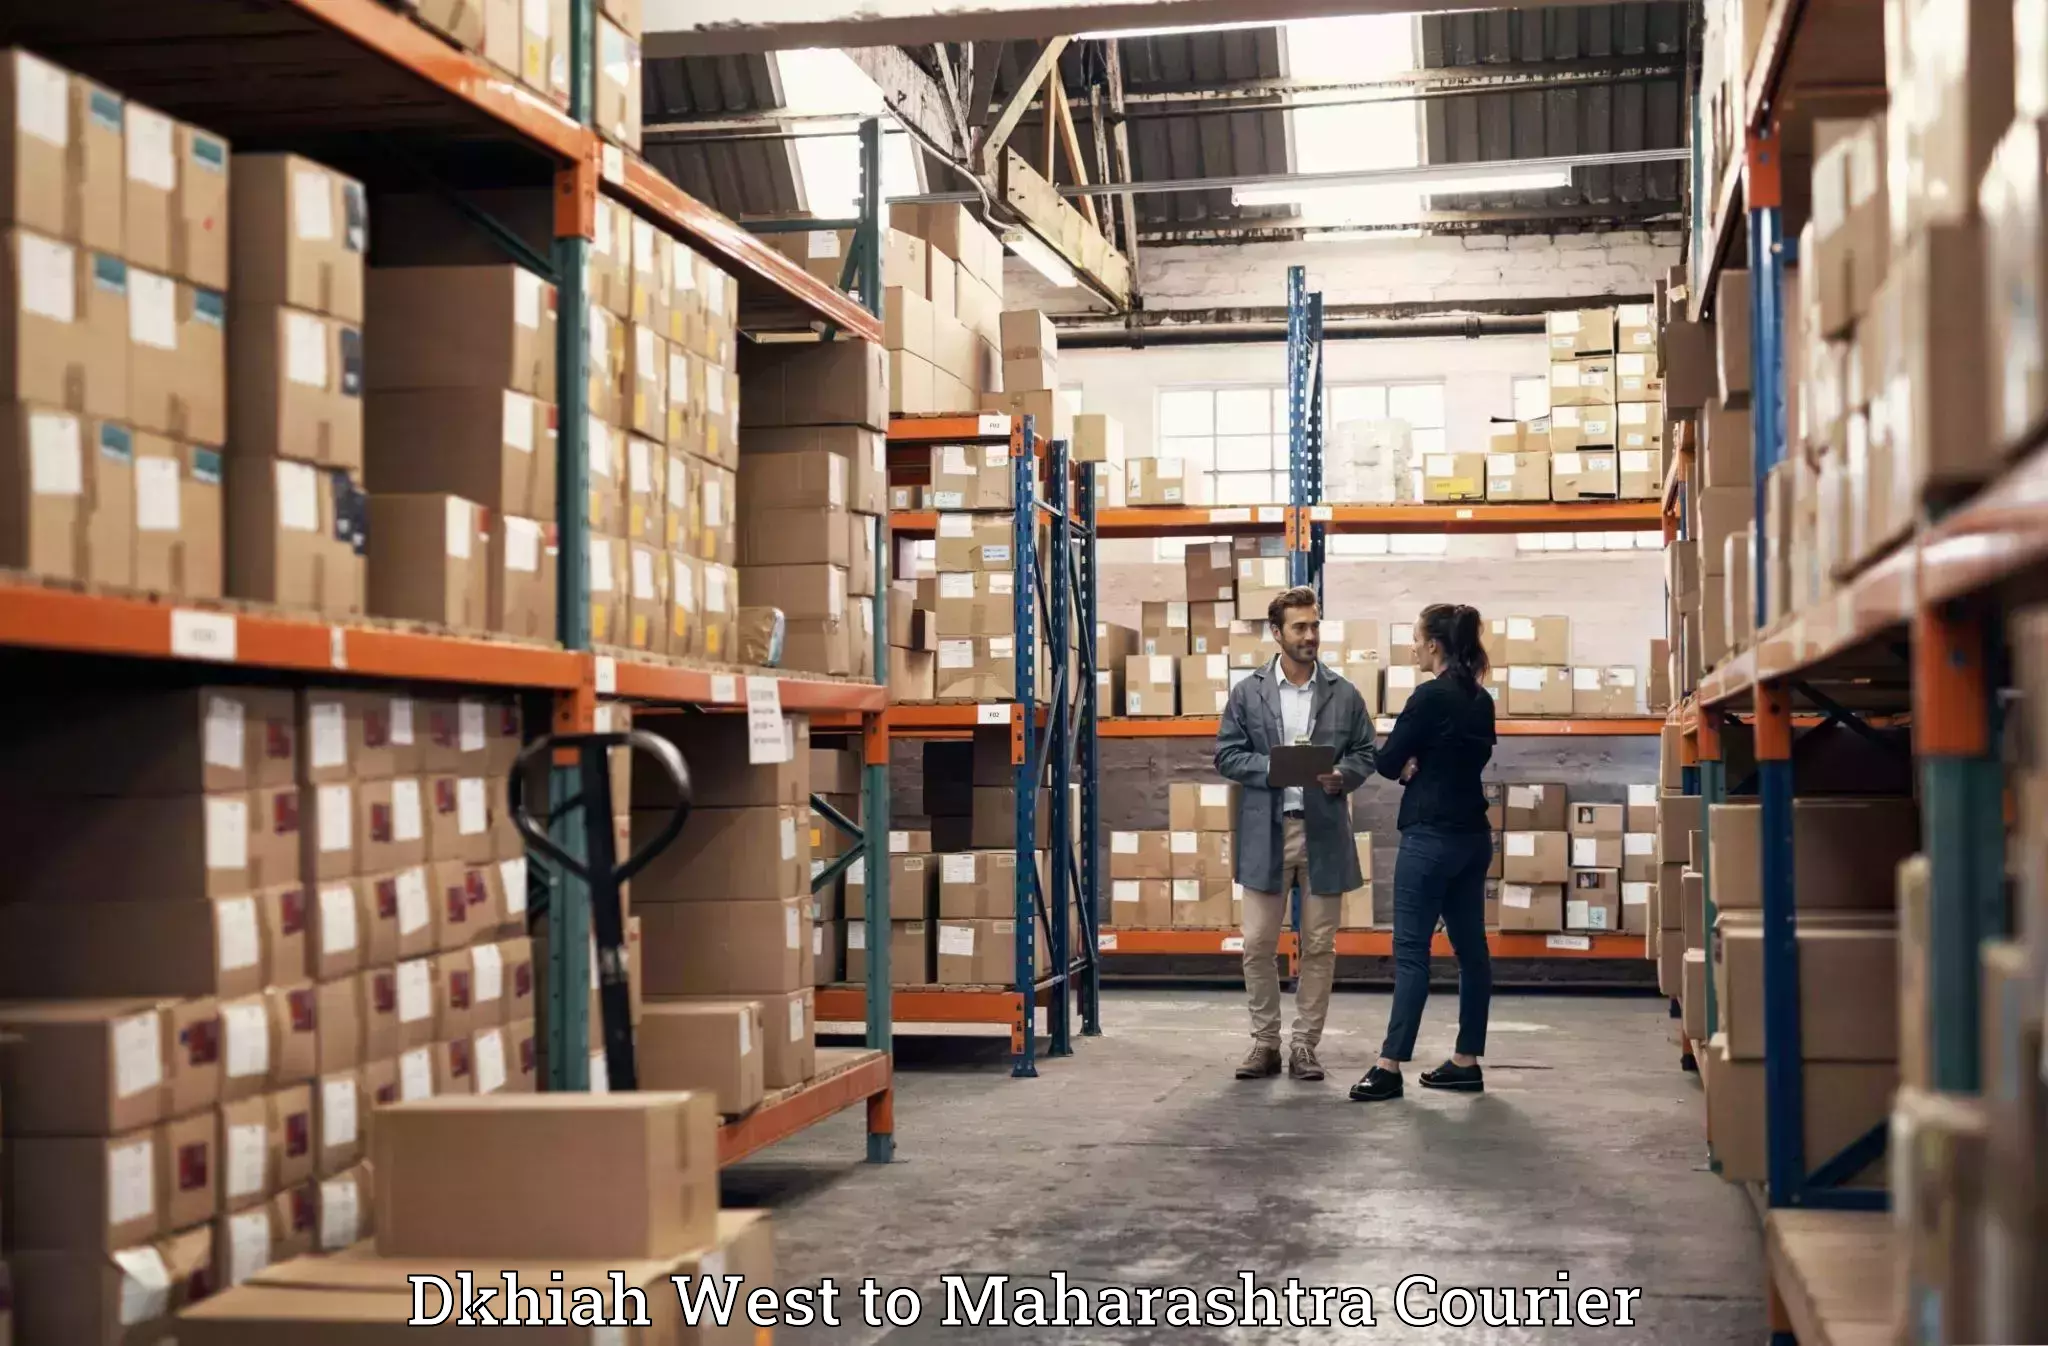 Luggage shipment processing Dkhiah West to Maharashtra